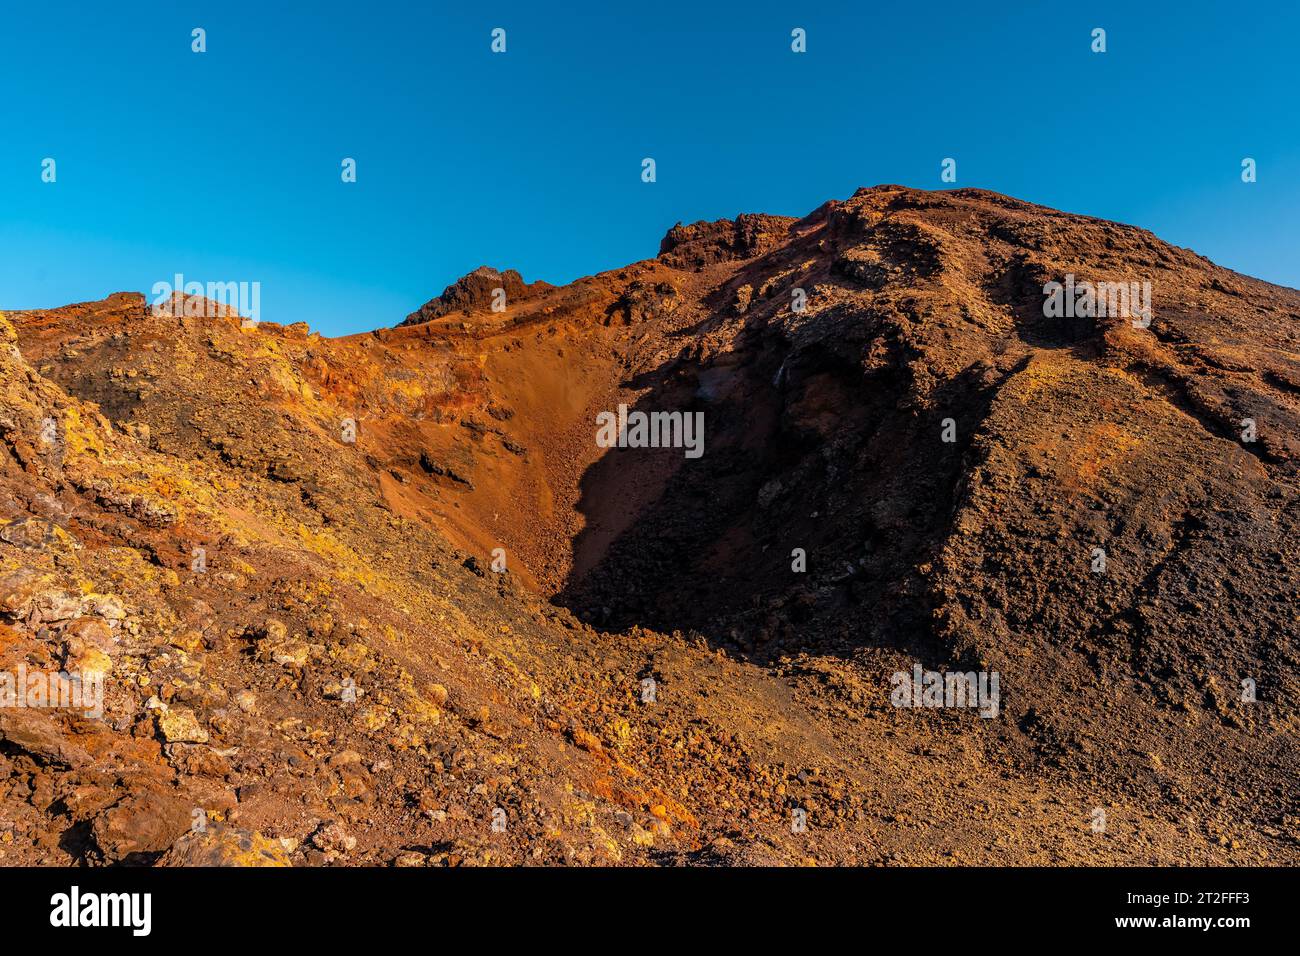 Krater des Vulkans Teneguia von der Route der Vulkane, La Palma Insel, Kanarische Inseln. Spanien Stockfoto